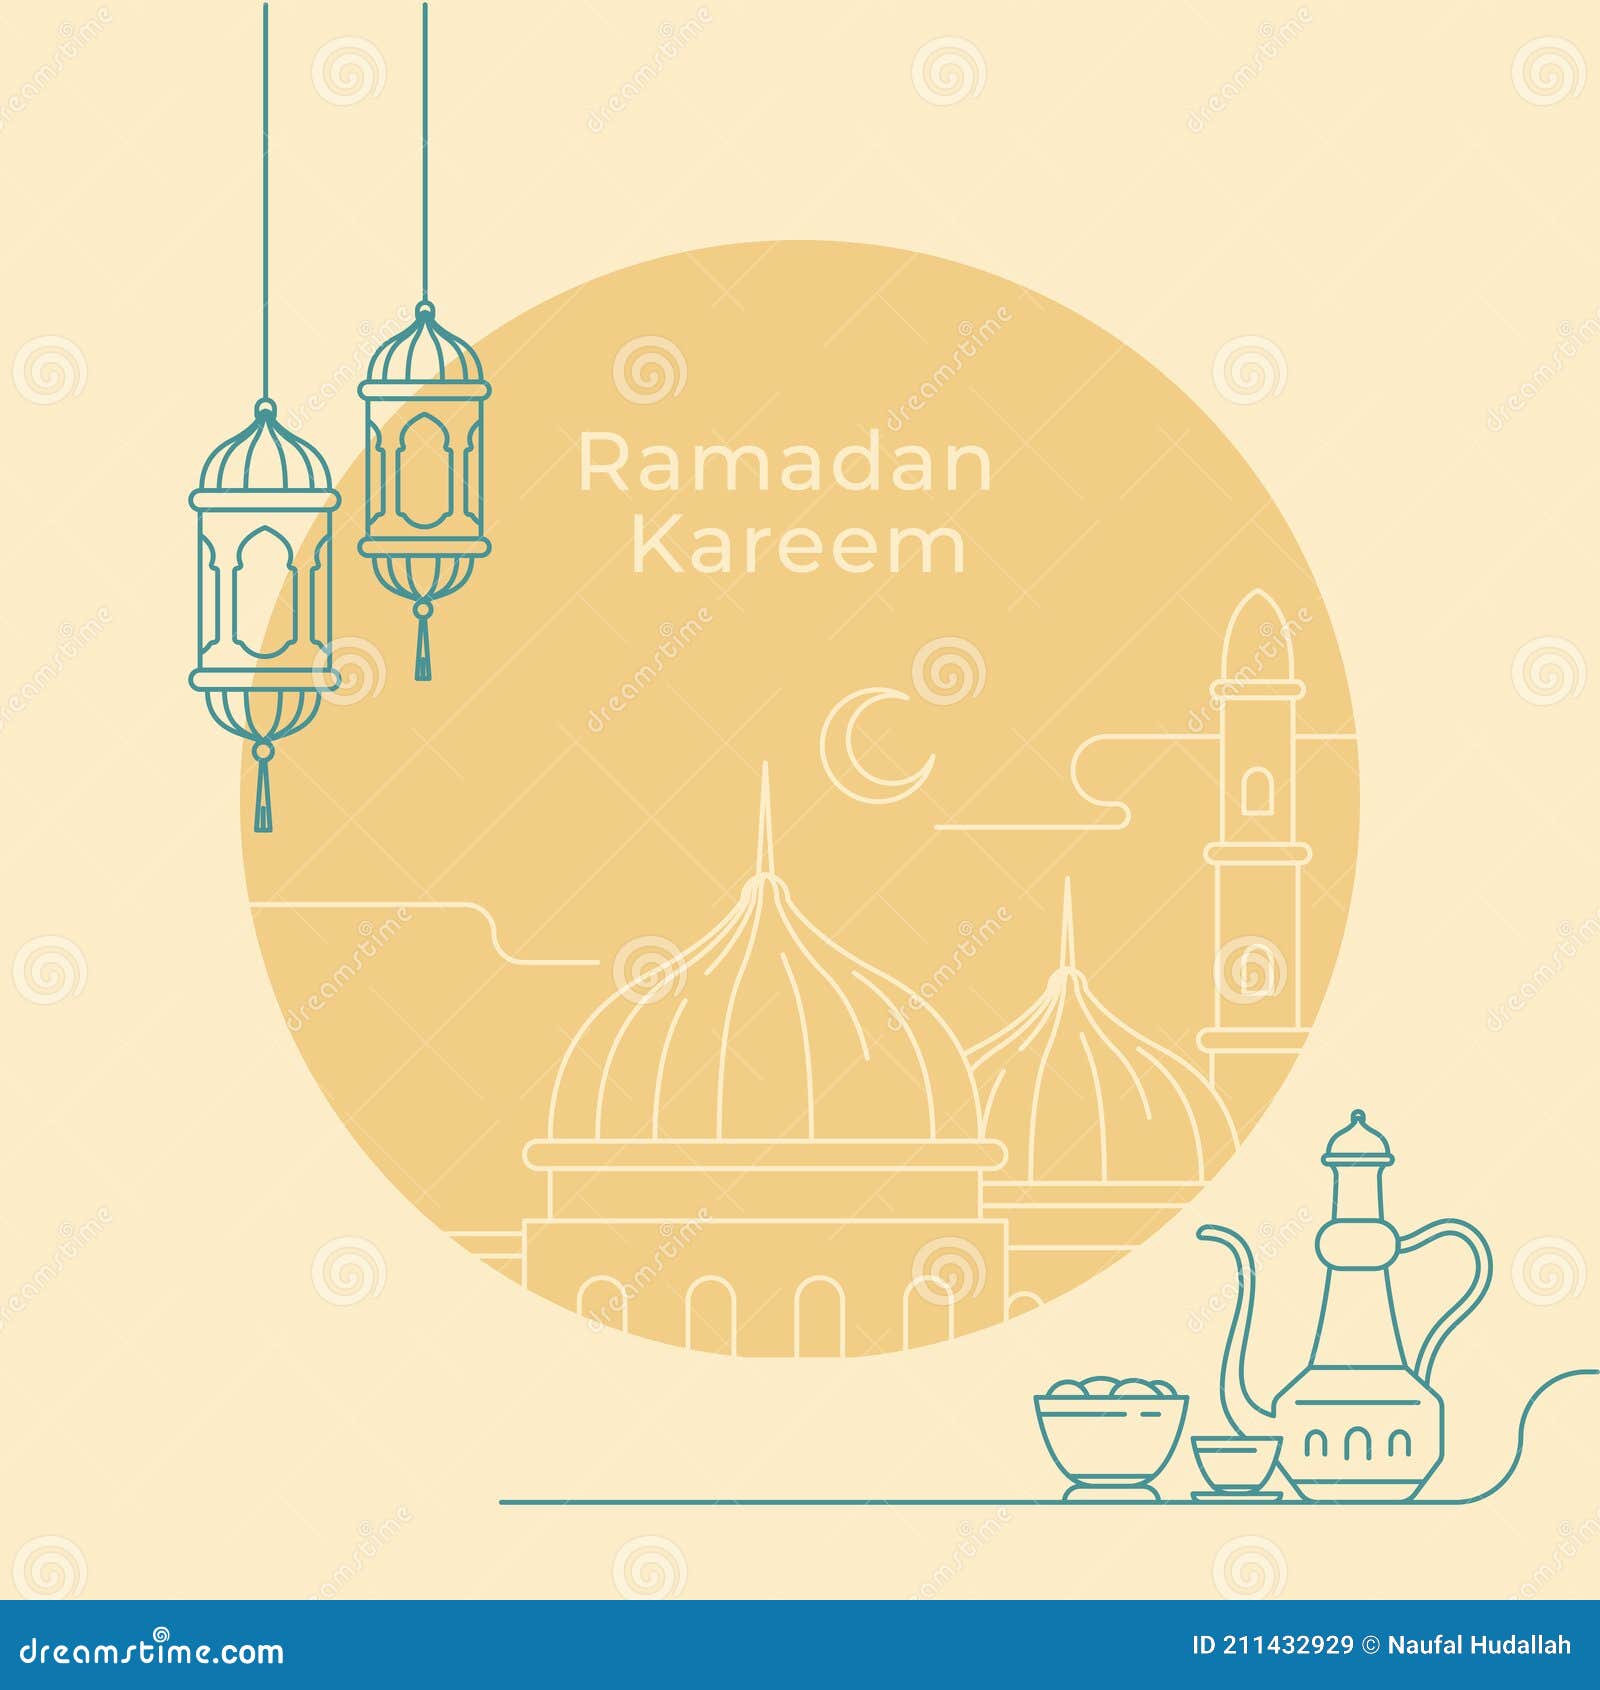 Thiết kế áp phích Ramadan rực rỡ và đầy màu sắc sẽ mang đến cho bạn một không gian tràn ngập niềm vui và hy vọng. Hãy để những áp phích này là nguồn cảm hứng mới cho bạn trong cả suốt tháng Ramadan.